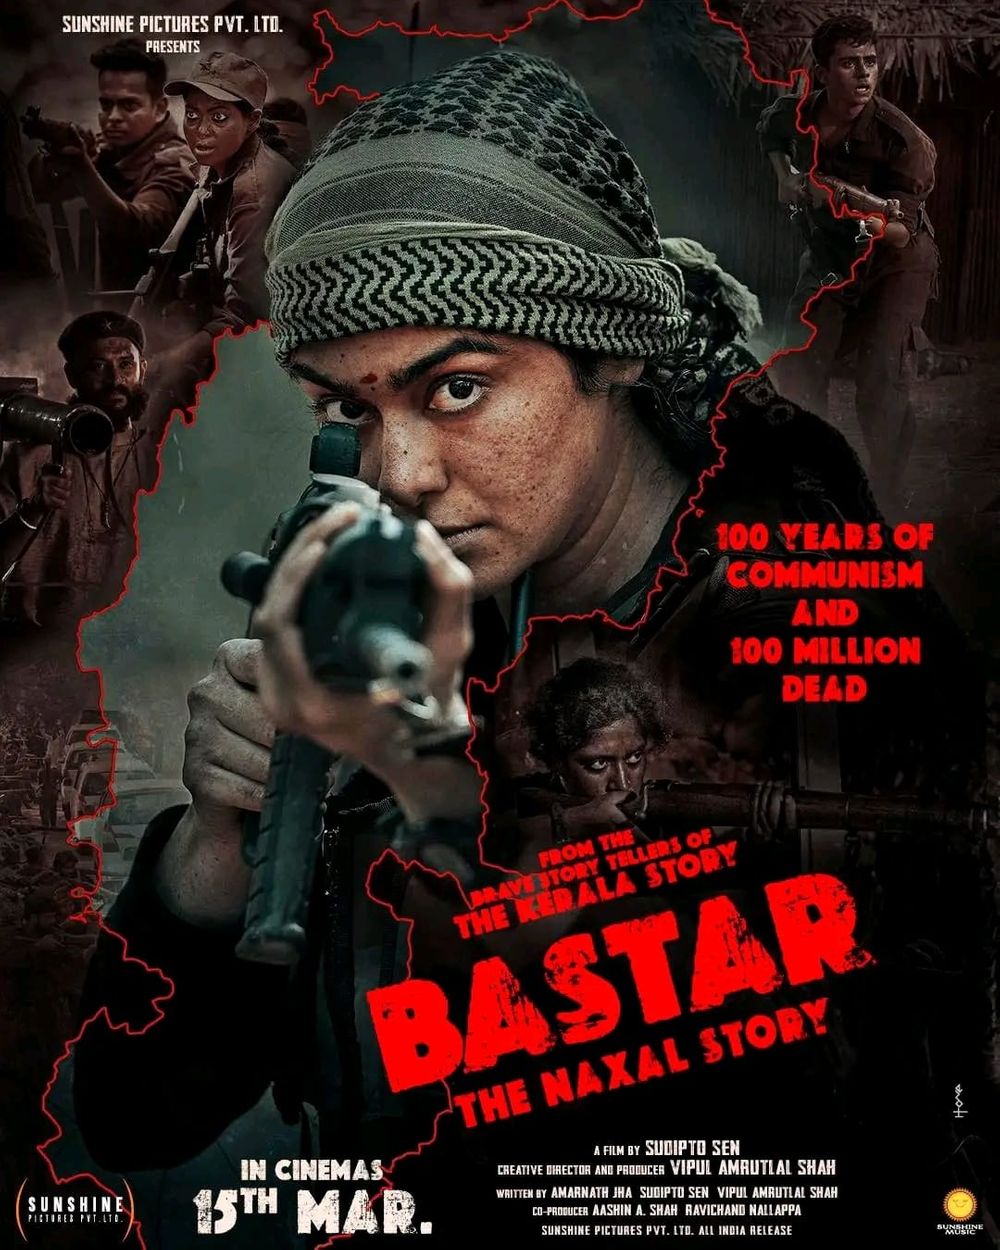  Bastar: The Naxal Story Movie Review